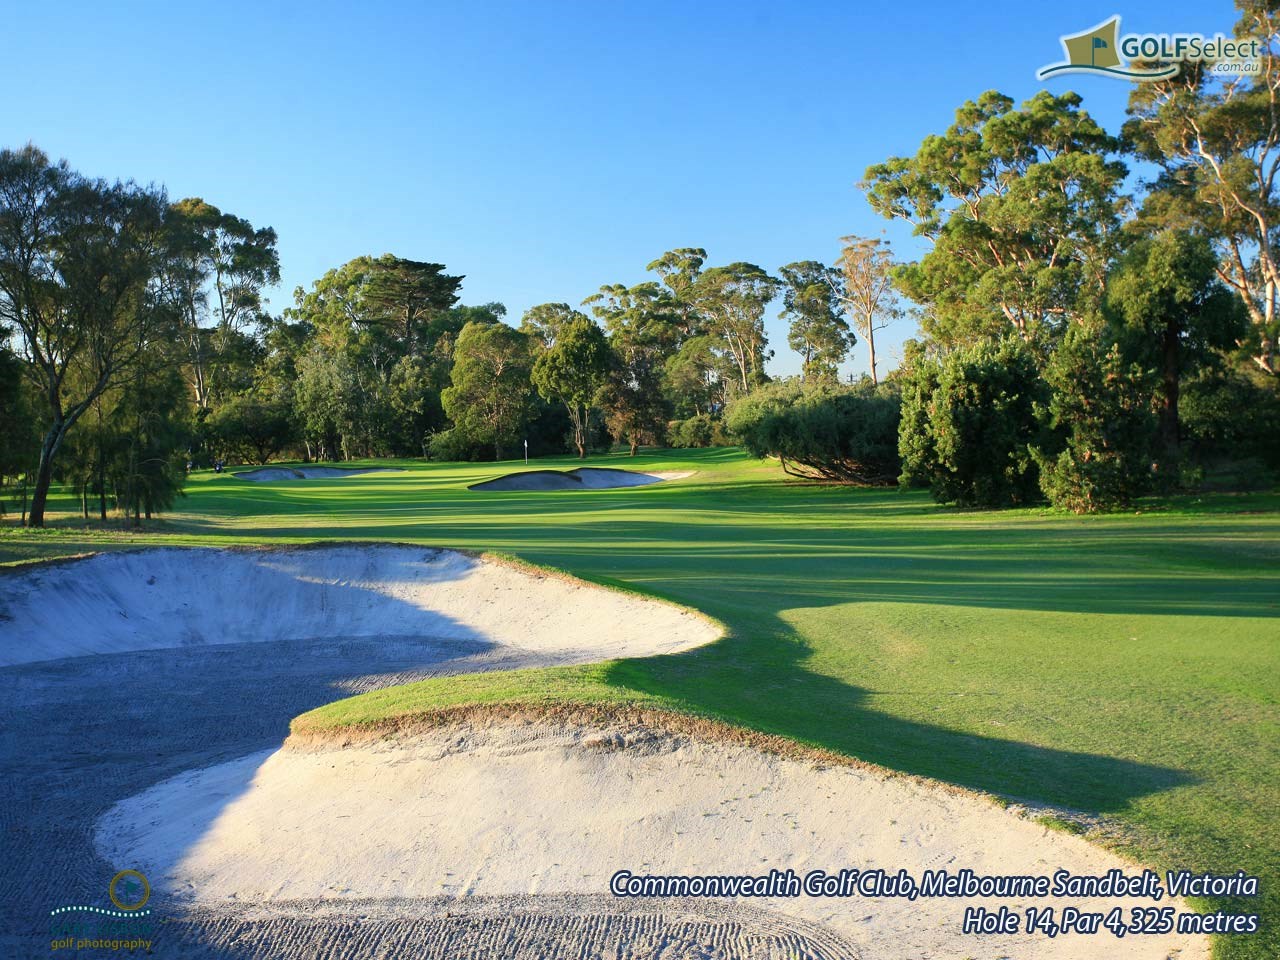 Commonwealth Golf Club Hole 14, Par 4,